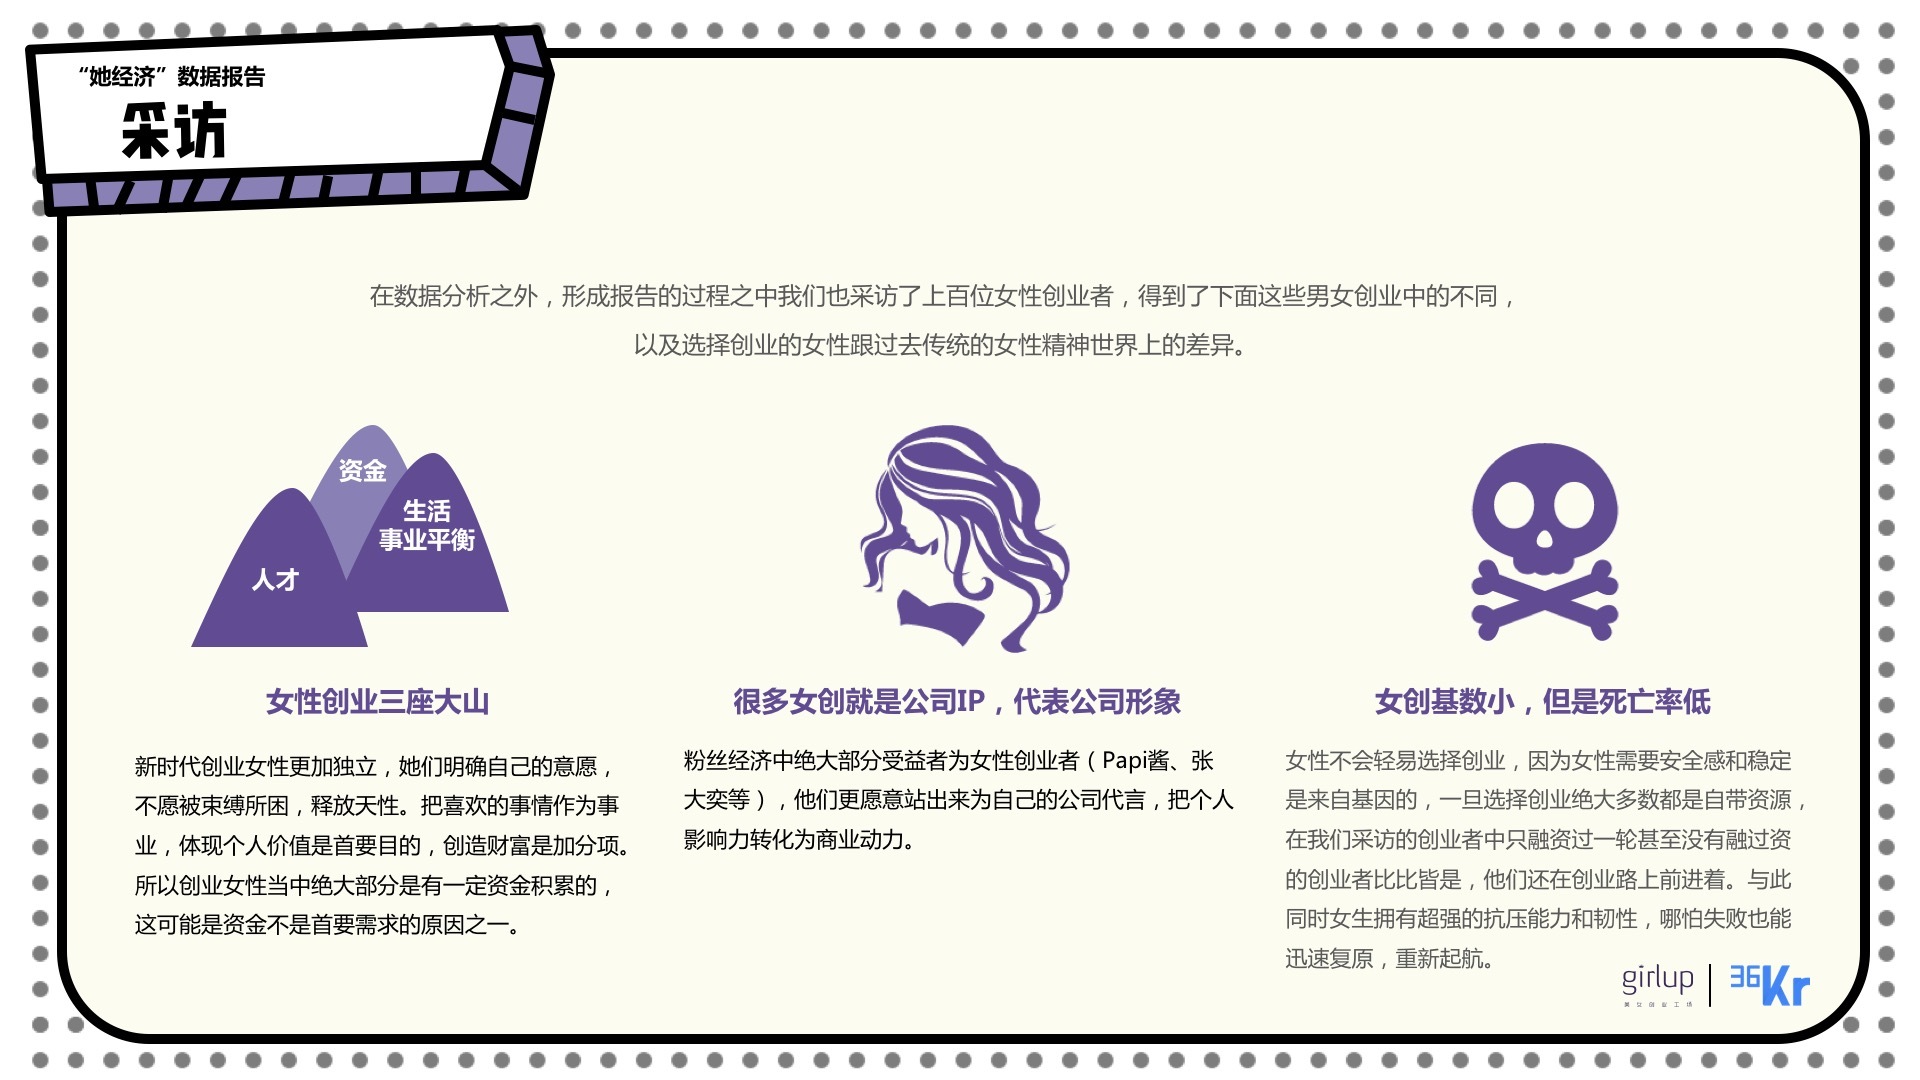 中国酒店业现状及未来发展趋势_女性创业网_2015中国人才招聘趋势报告